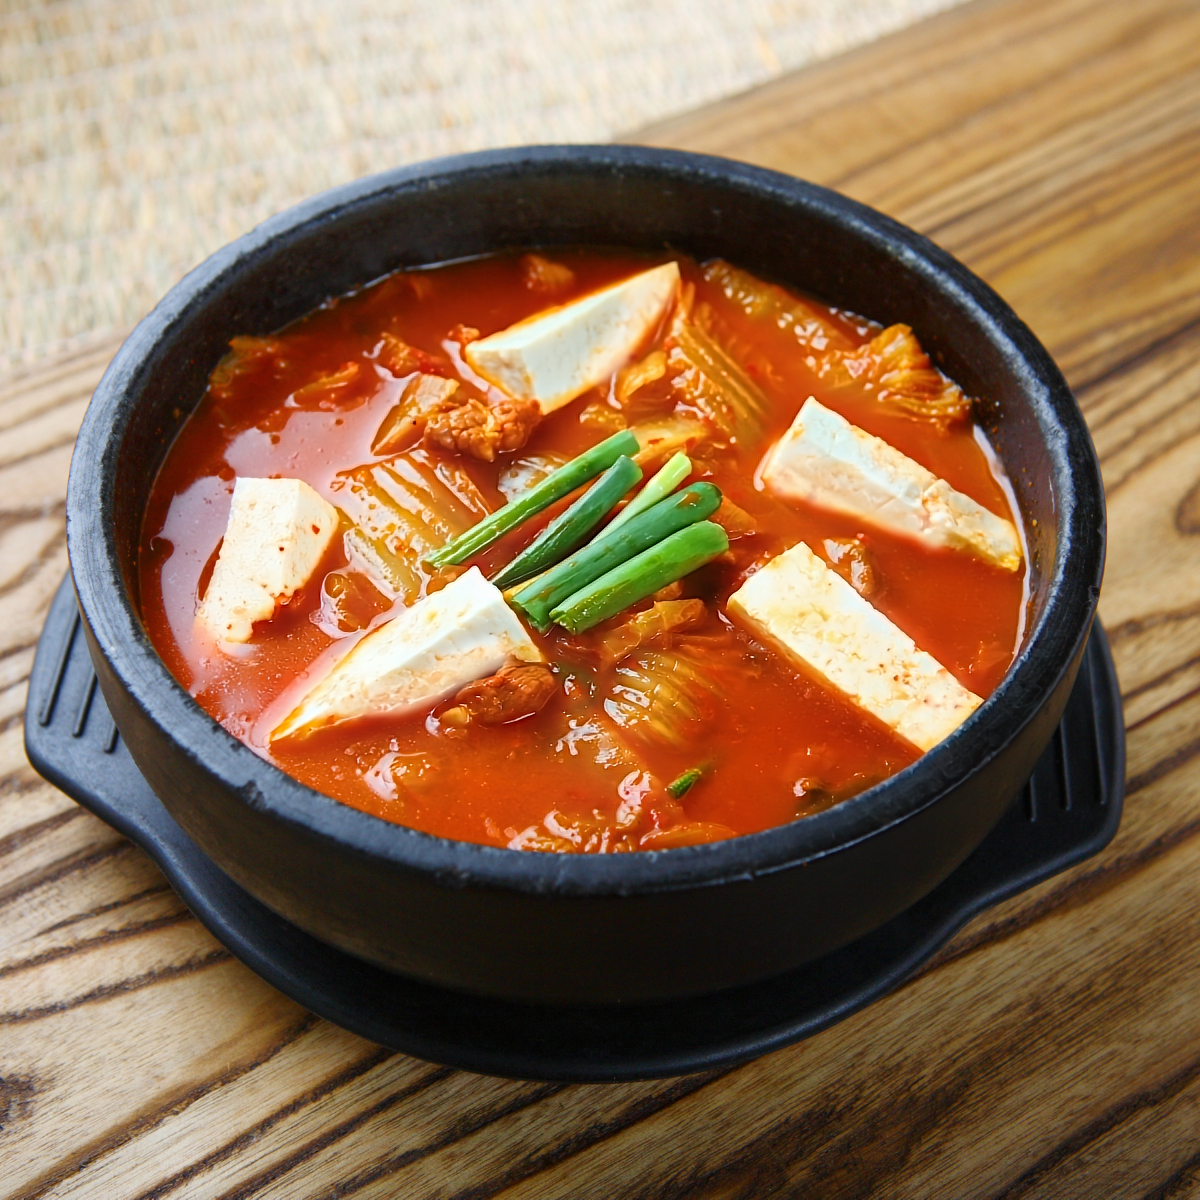 3. Instant Pot Kimchi Jjigae